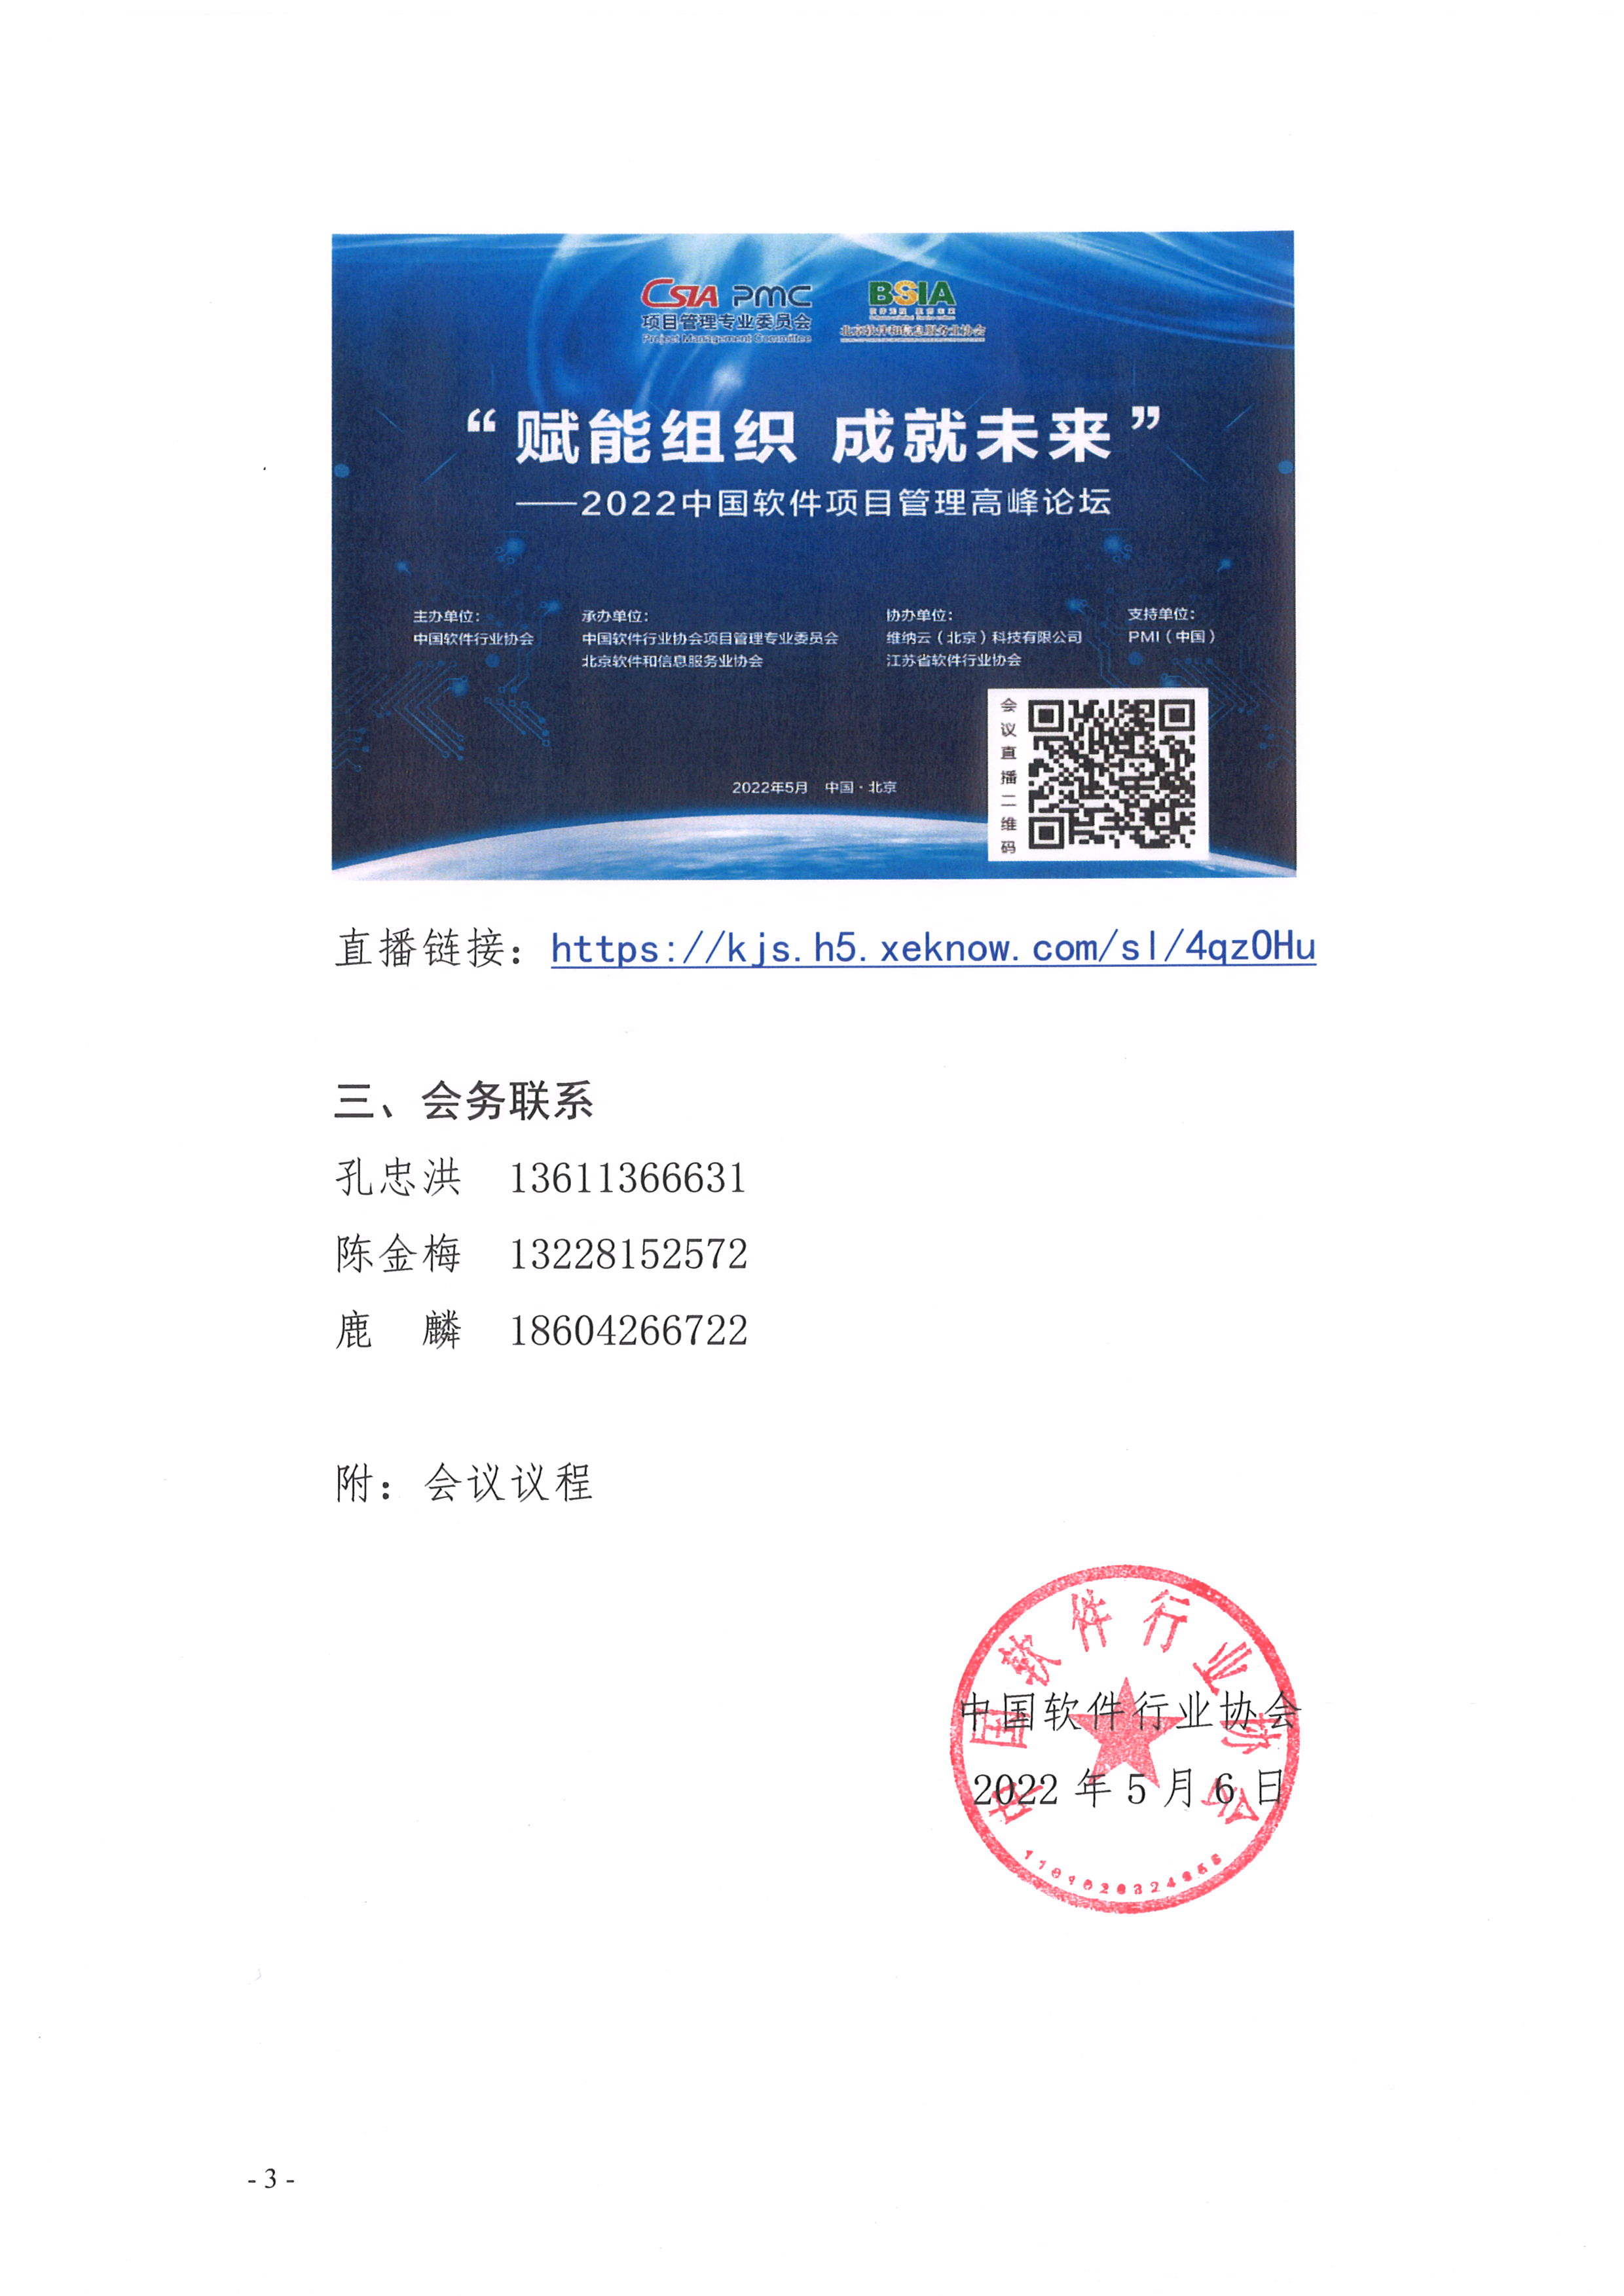 最新-2022中国软件项目管理高峰论坛通知(3)_页面_3.jpg